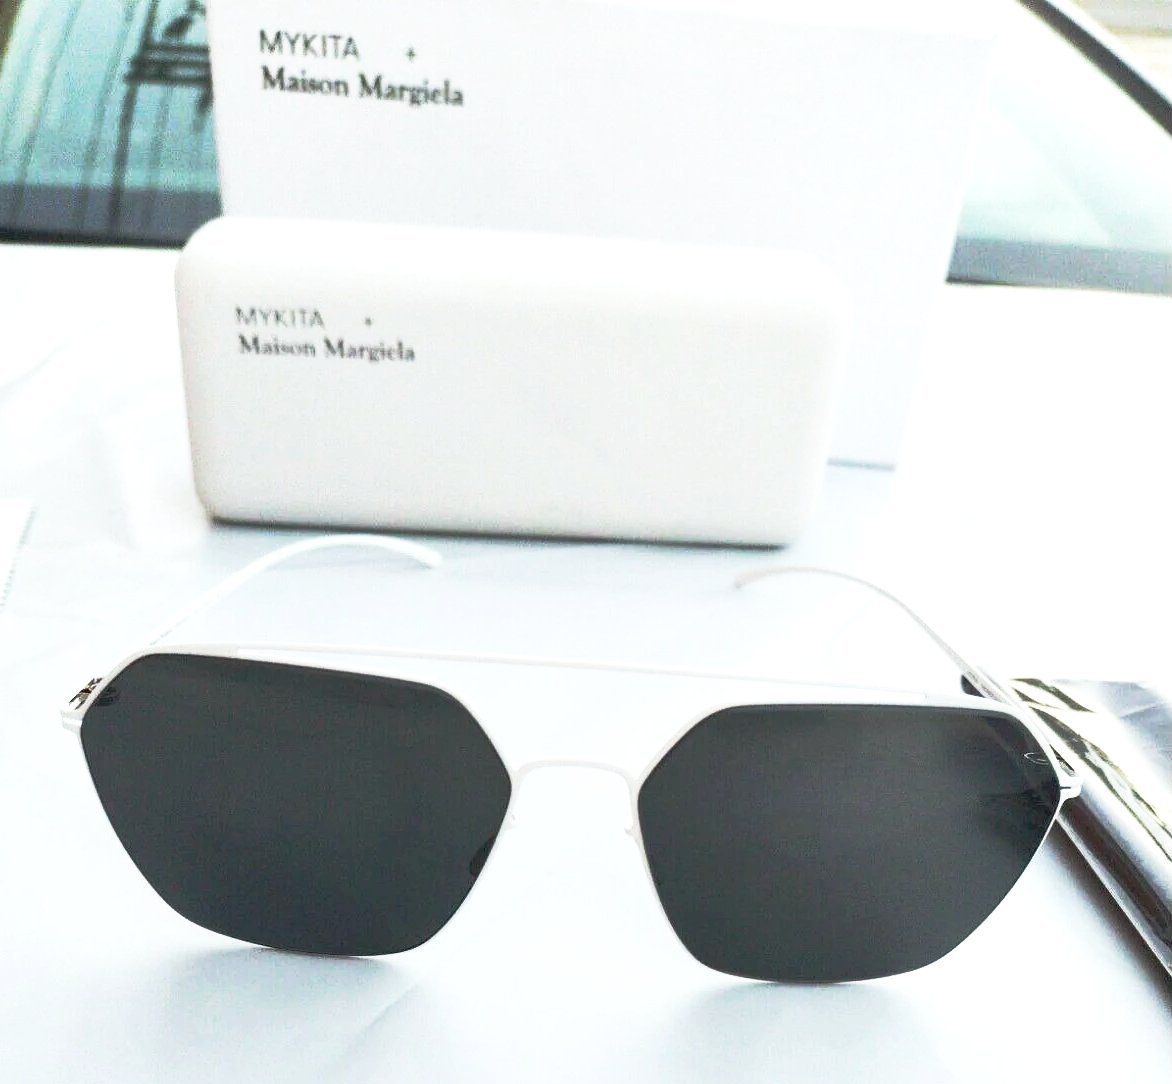 Mykita + Maison Margiela sunglasses white frame grey lenses